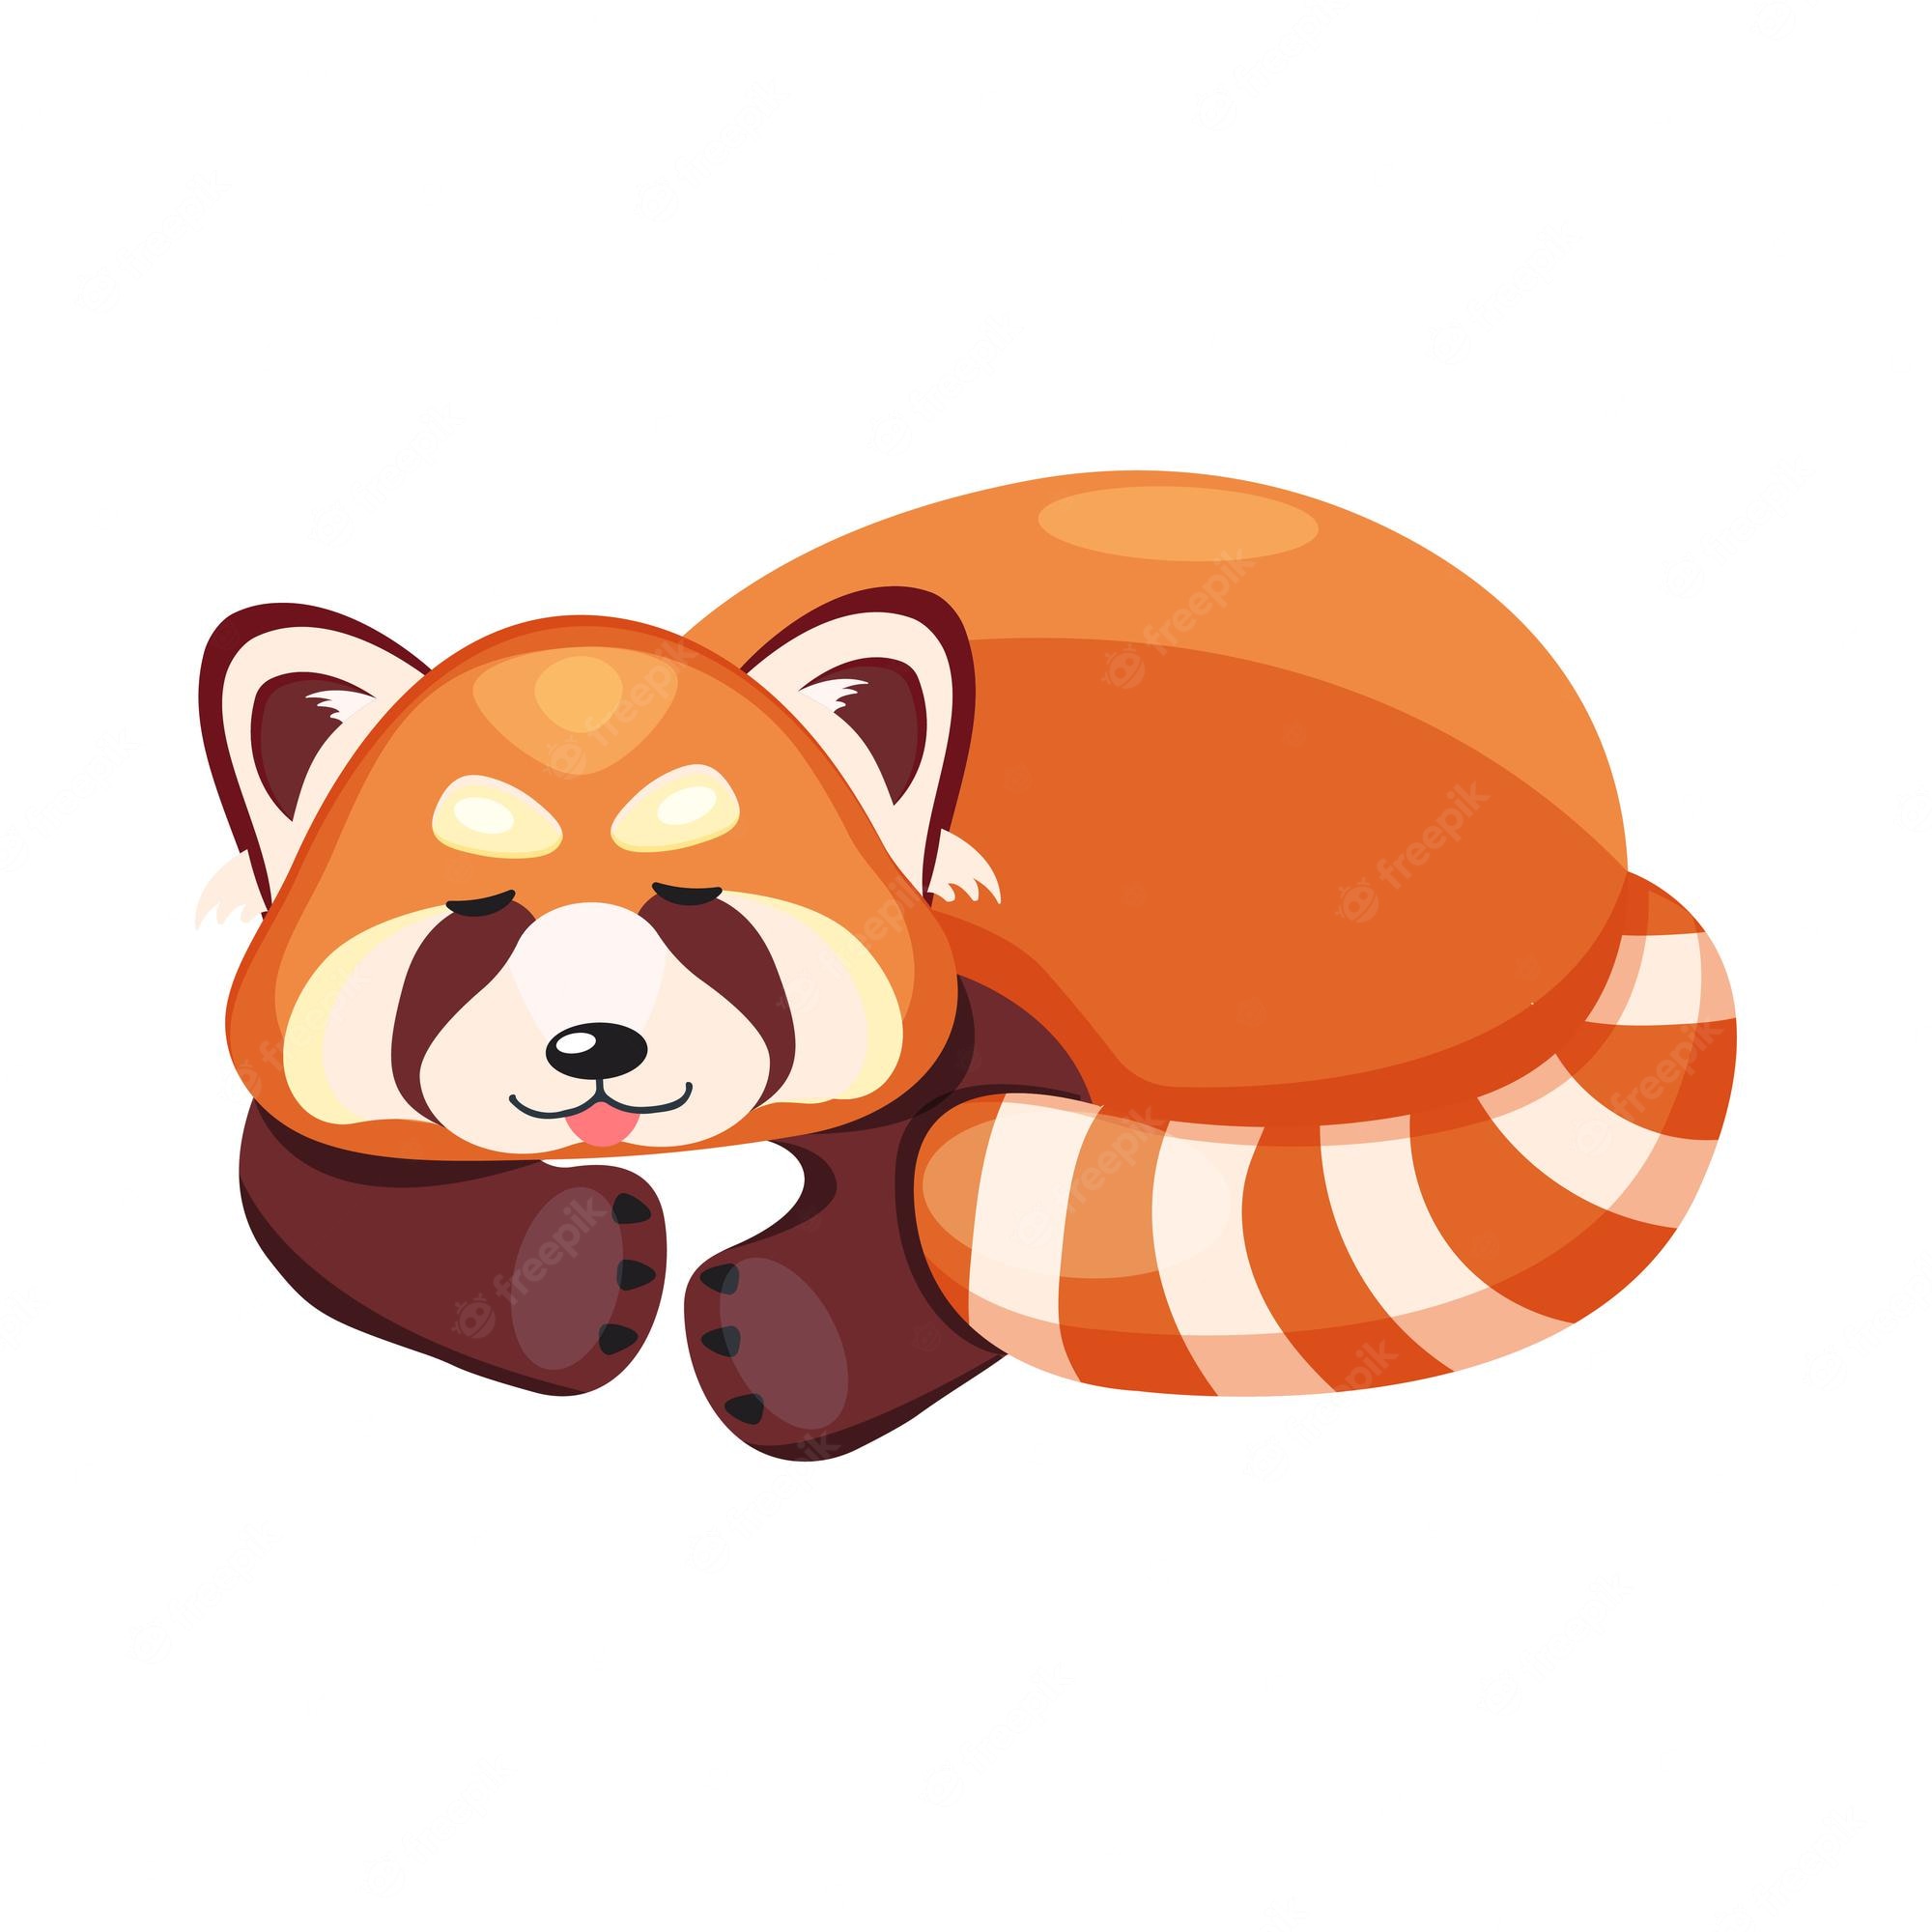 Baby Red Panda Image